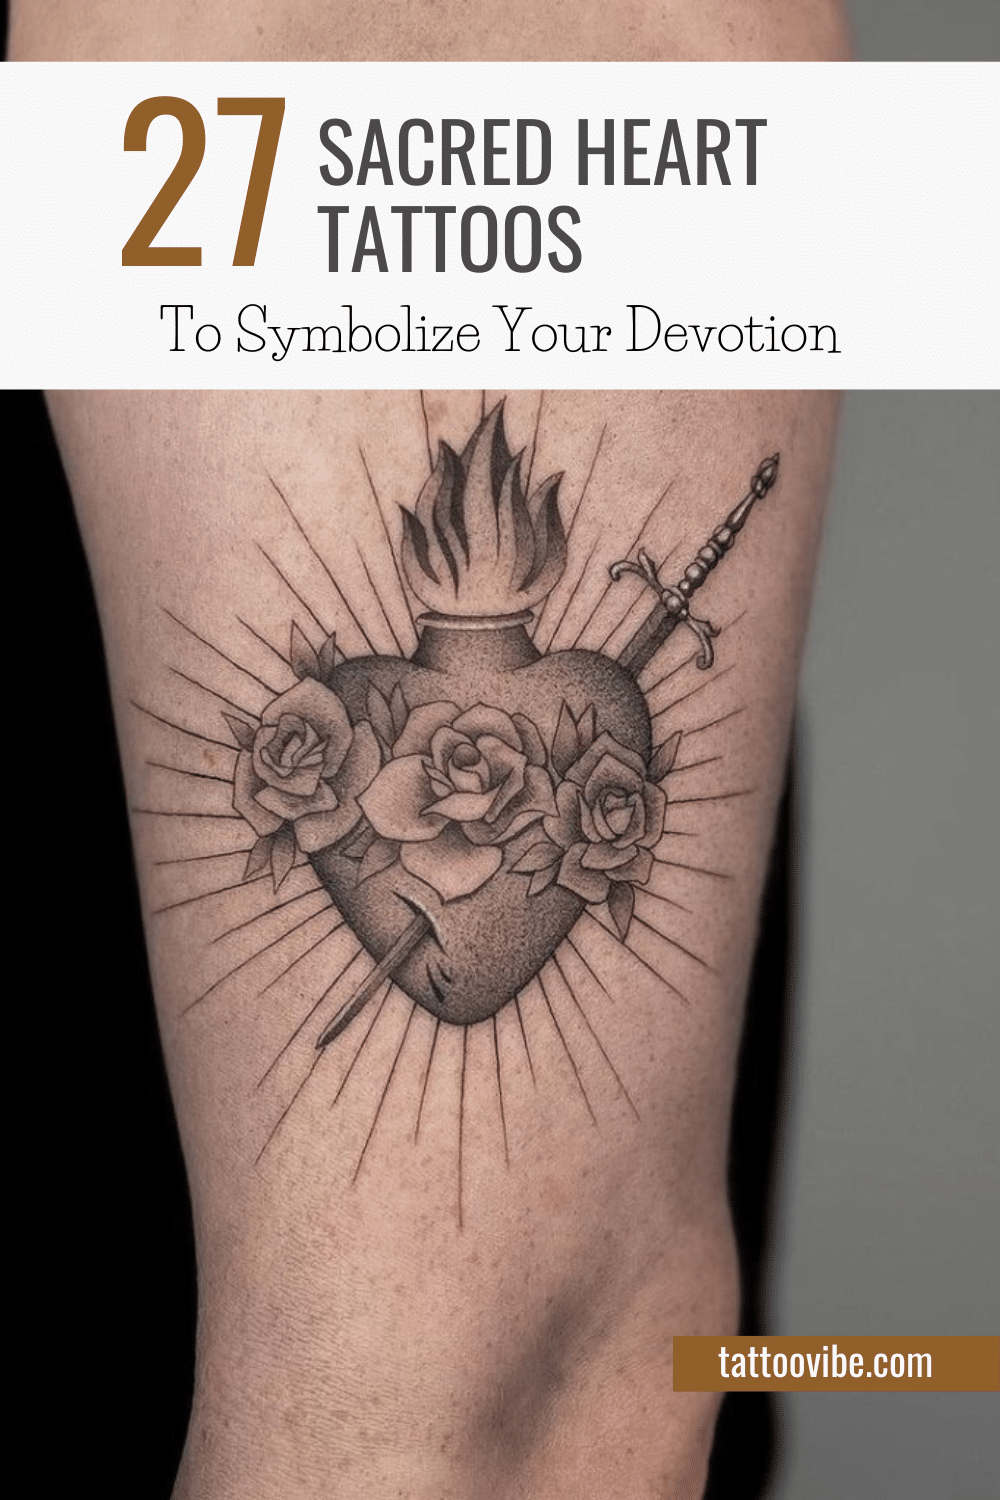 27 Herz-Jesu-Tattoos als Symbol für Ihre Hingabe
